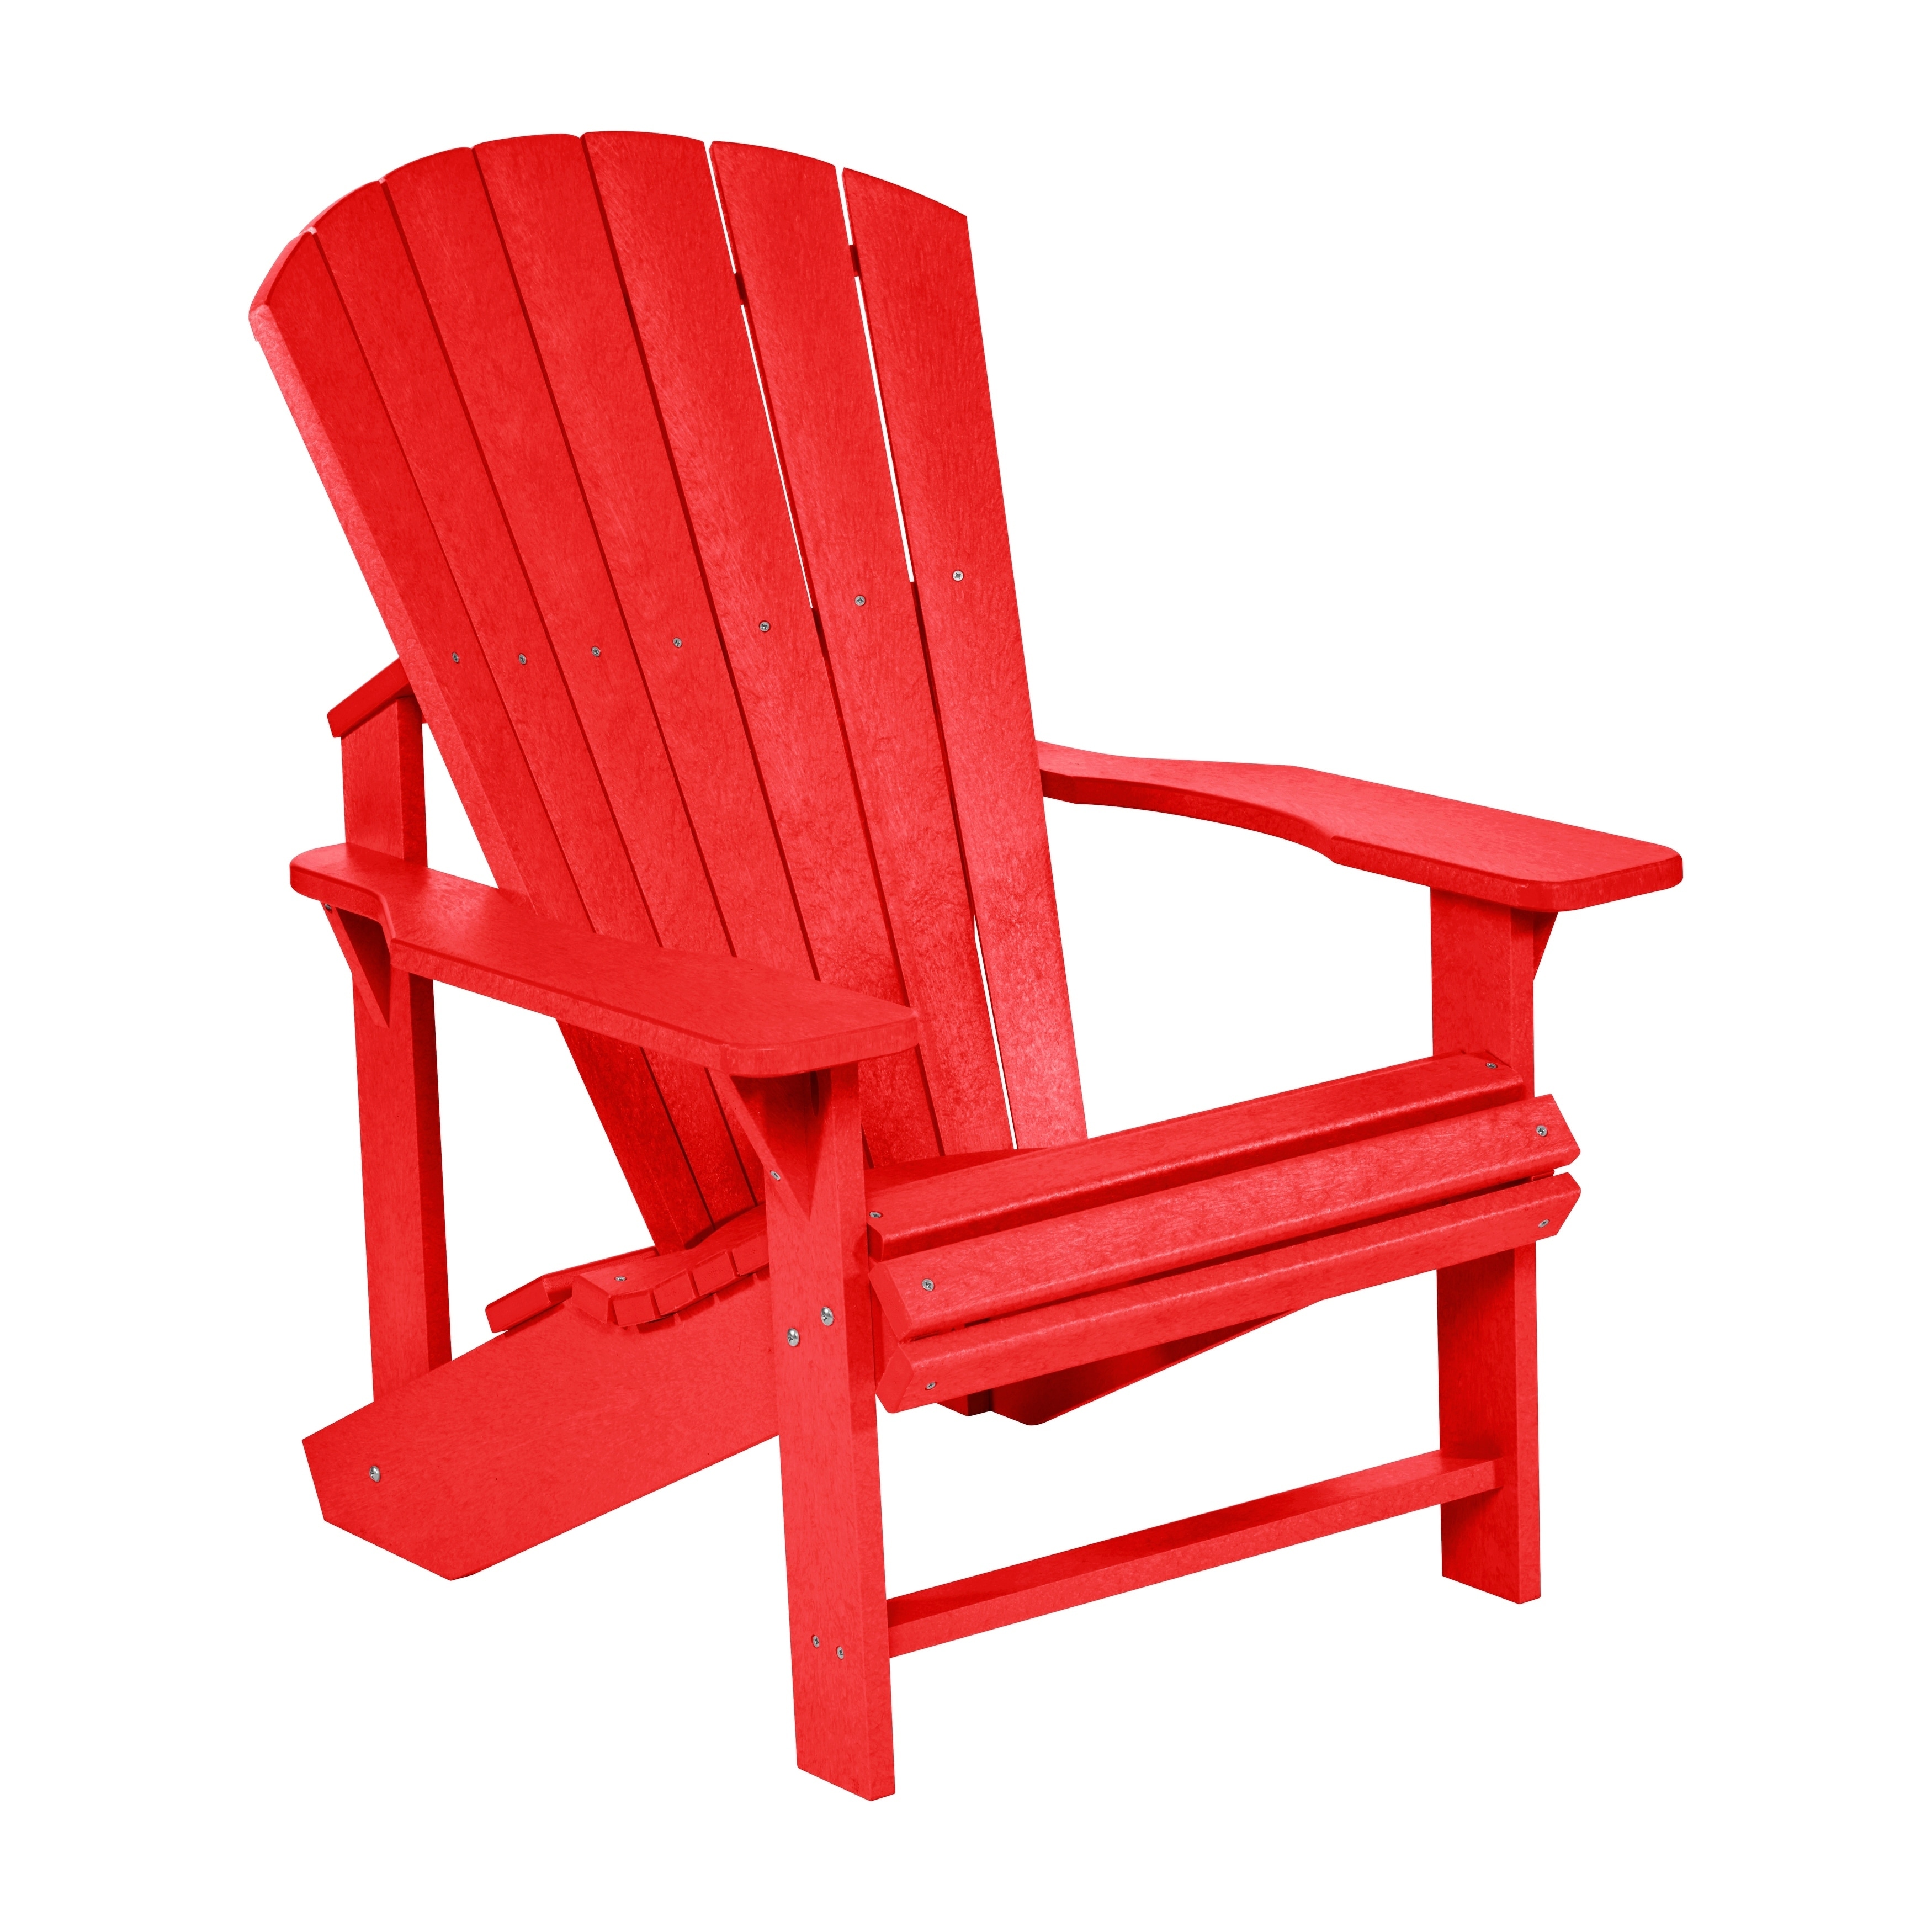 C.R. Plastics Generation Adirondack Chair 66b28f78 D1d0 4f1d Ac89 328320e9c2dd 